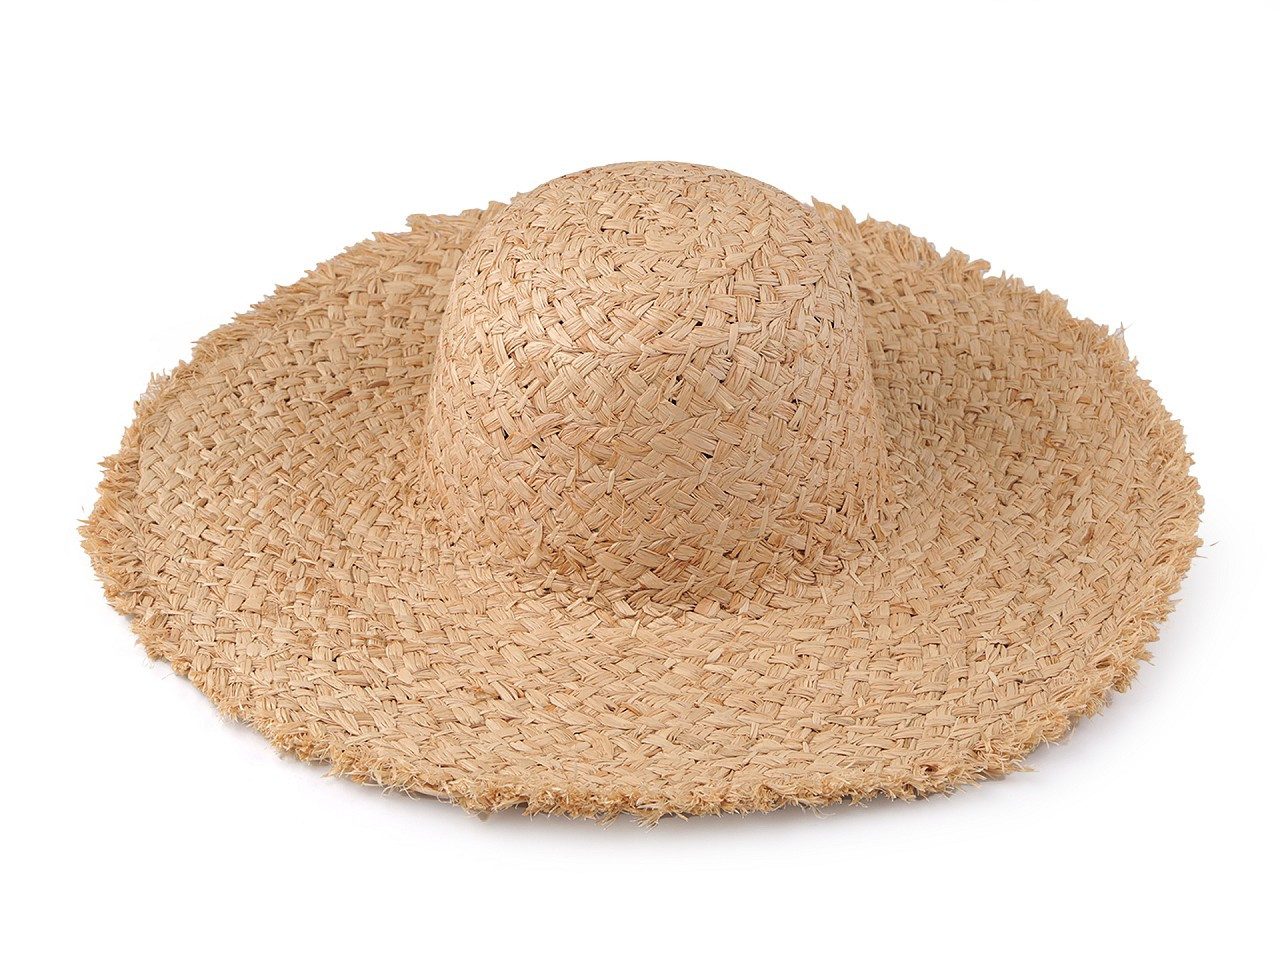 Dámský letní klobouk / slamák k dozdobení s otřepeným okrajem, barva přírodní